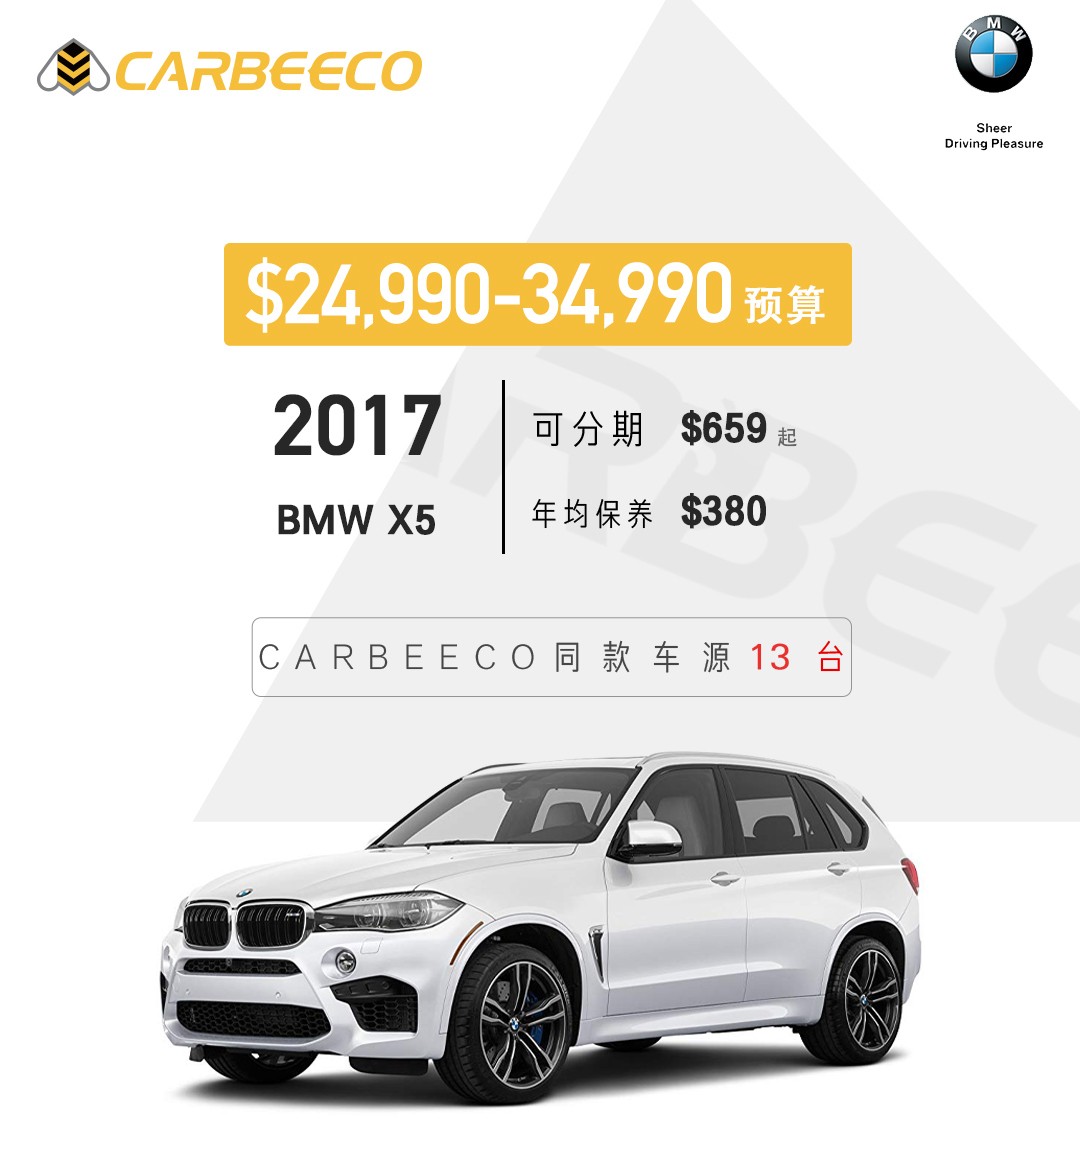 专业买手找车极速方便购车安心领车上路汽车直购平台 Carbeeco 3万以下